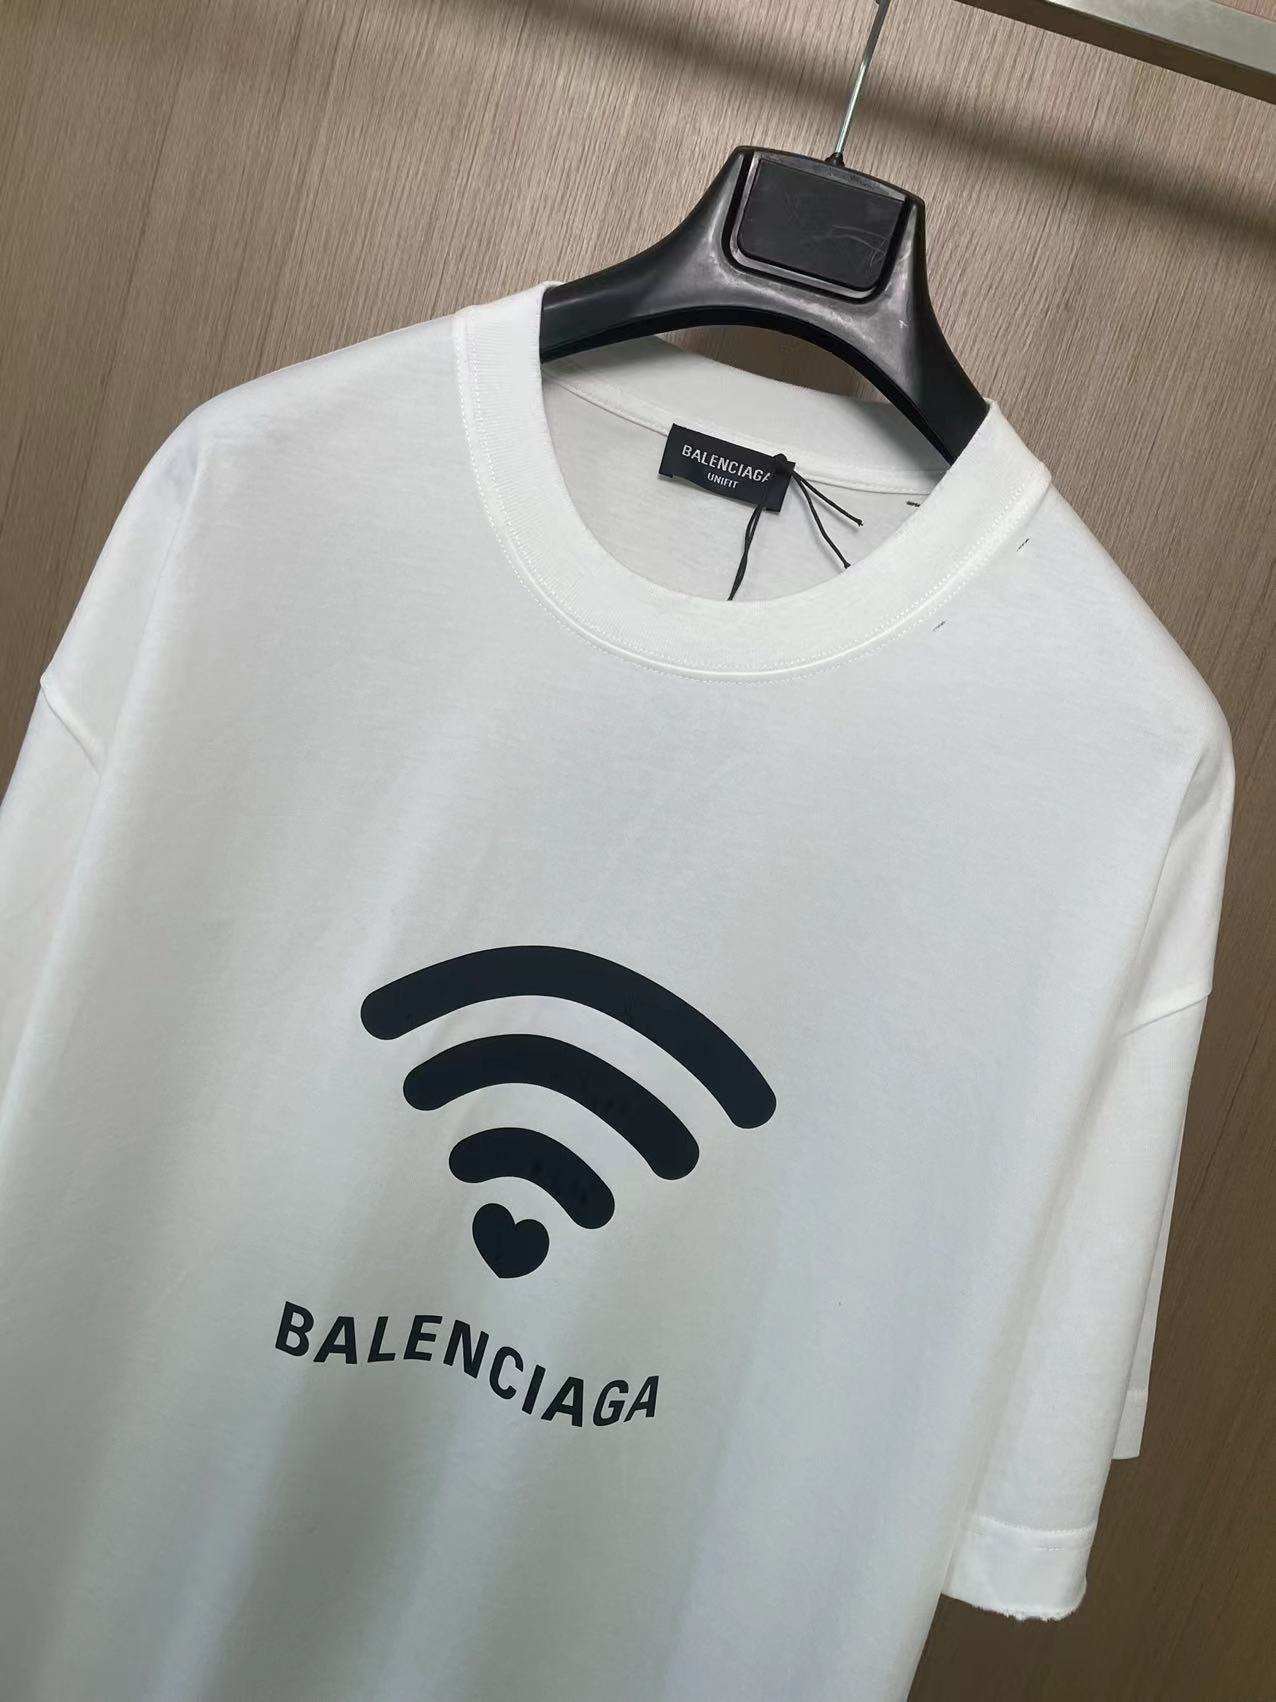 BalenciagaWi-Fi信号印花短袖印花短袖300克磅重32支双纱精梳棉面料小领口宽松版型男女同款